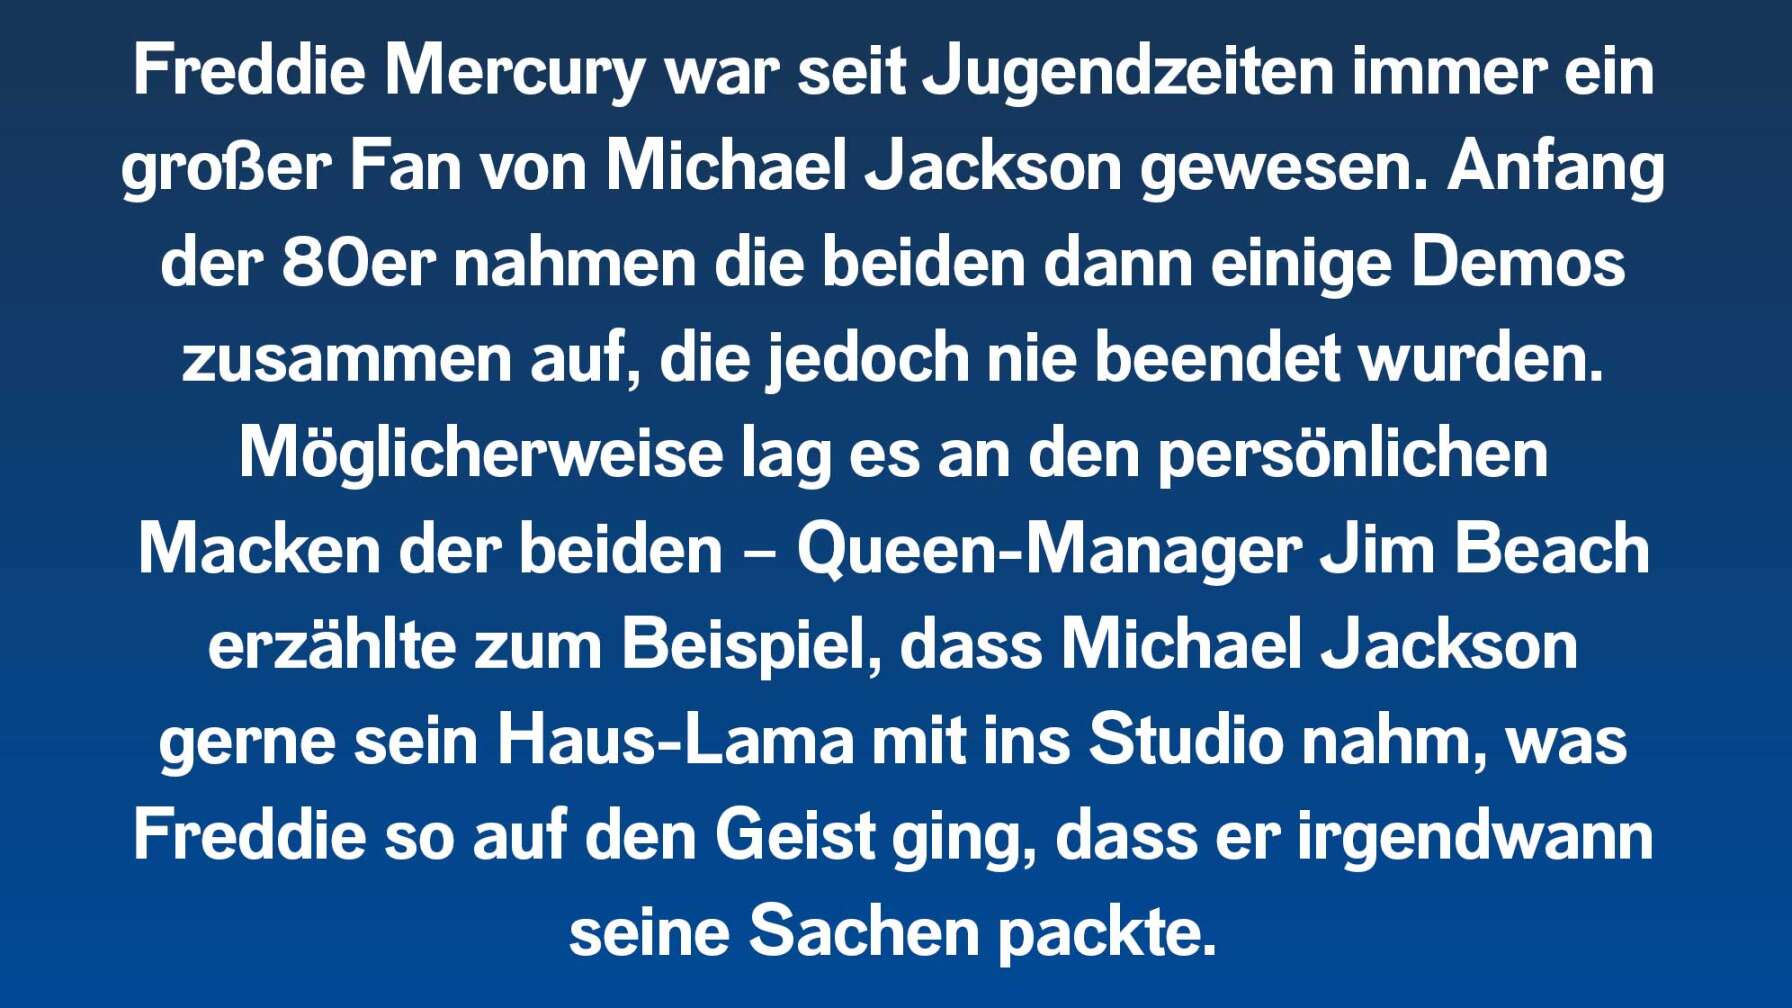 Freddie Mercury war seit Jugendzeiten immer ein großer Fan von Michael Jackson gewesen. Anfang der 80er nahmen die beiden dann einige Demos zusammen auf, die jedoch nie beendet wurden. Möglicherweise lag es an den persönlichen Macken der beiden – Queen-Manager Jim Beach erzählte zum Beispiel, dass Michael Jackson gerne sein Haus-Lama mit ins Studio nahm, was Freddie so auf den Geist ging, dass er irgendwann seine Sachen packte.